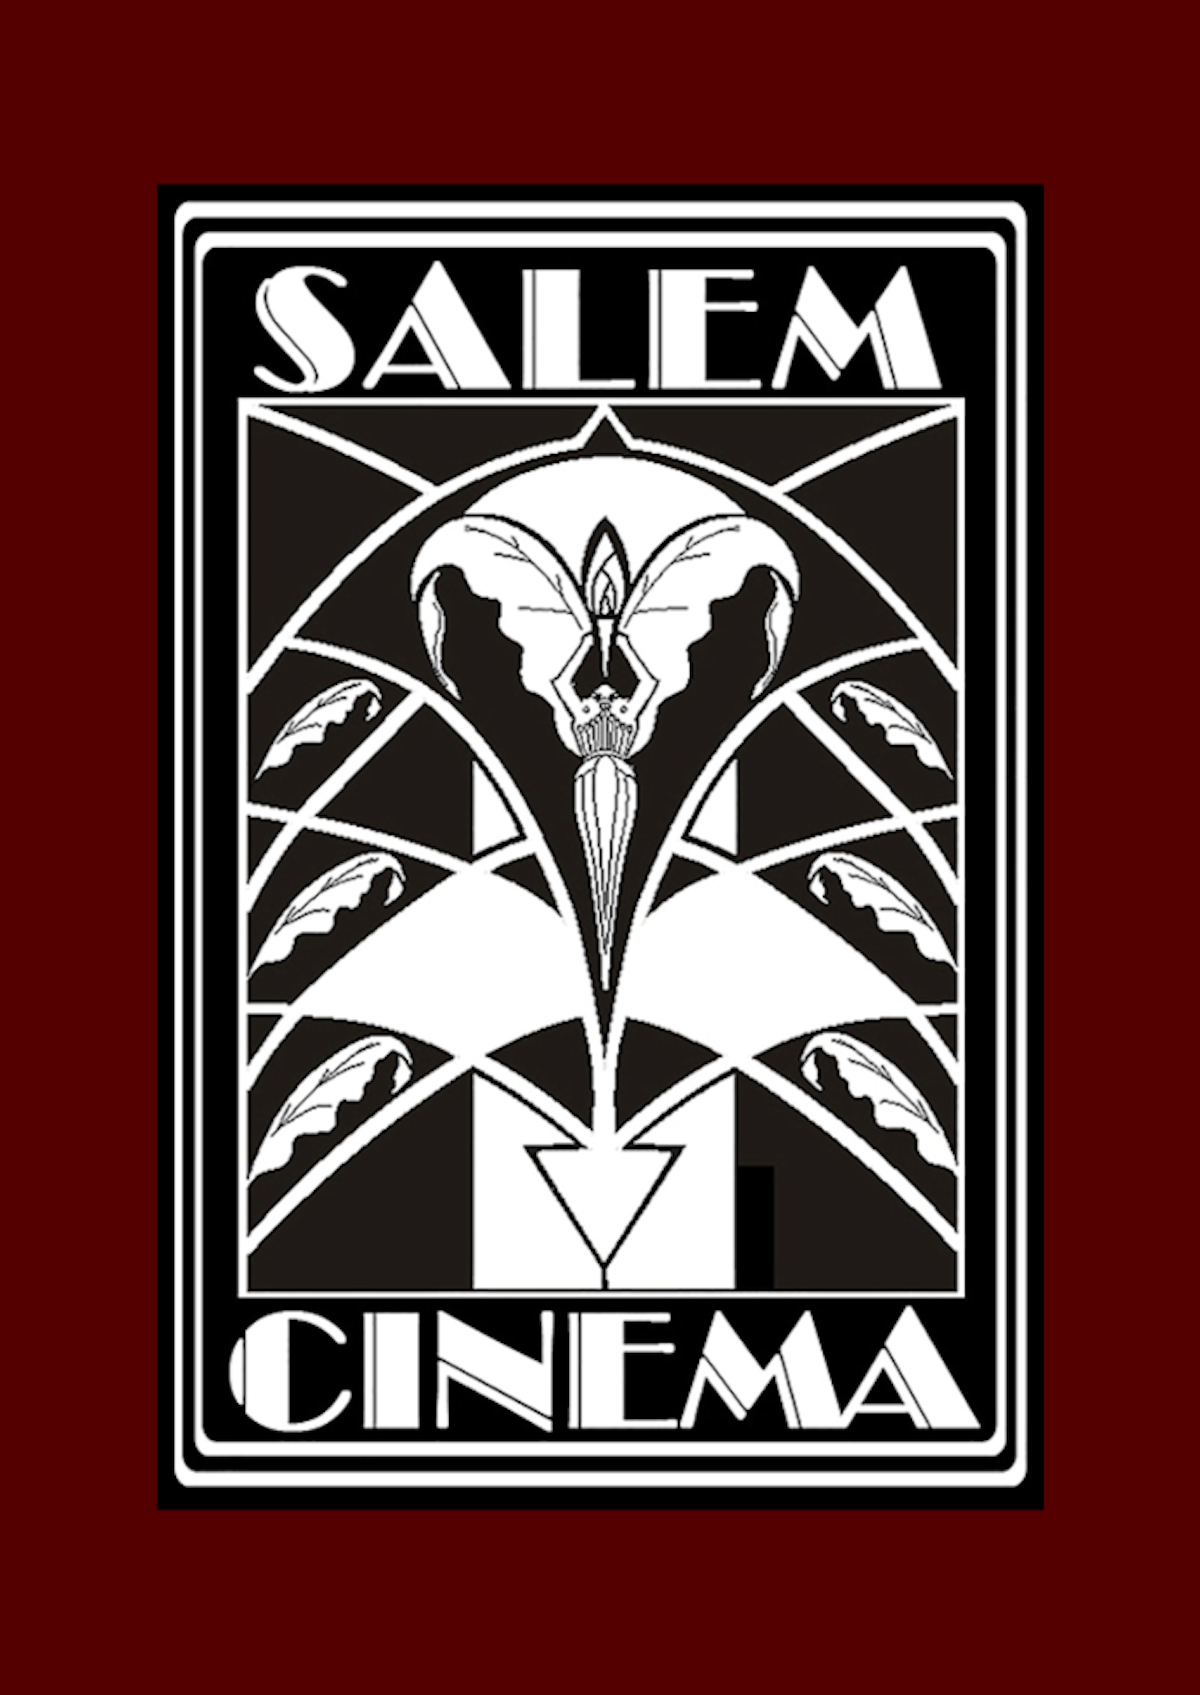 Salem Cinema